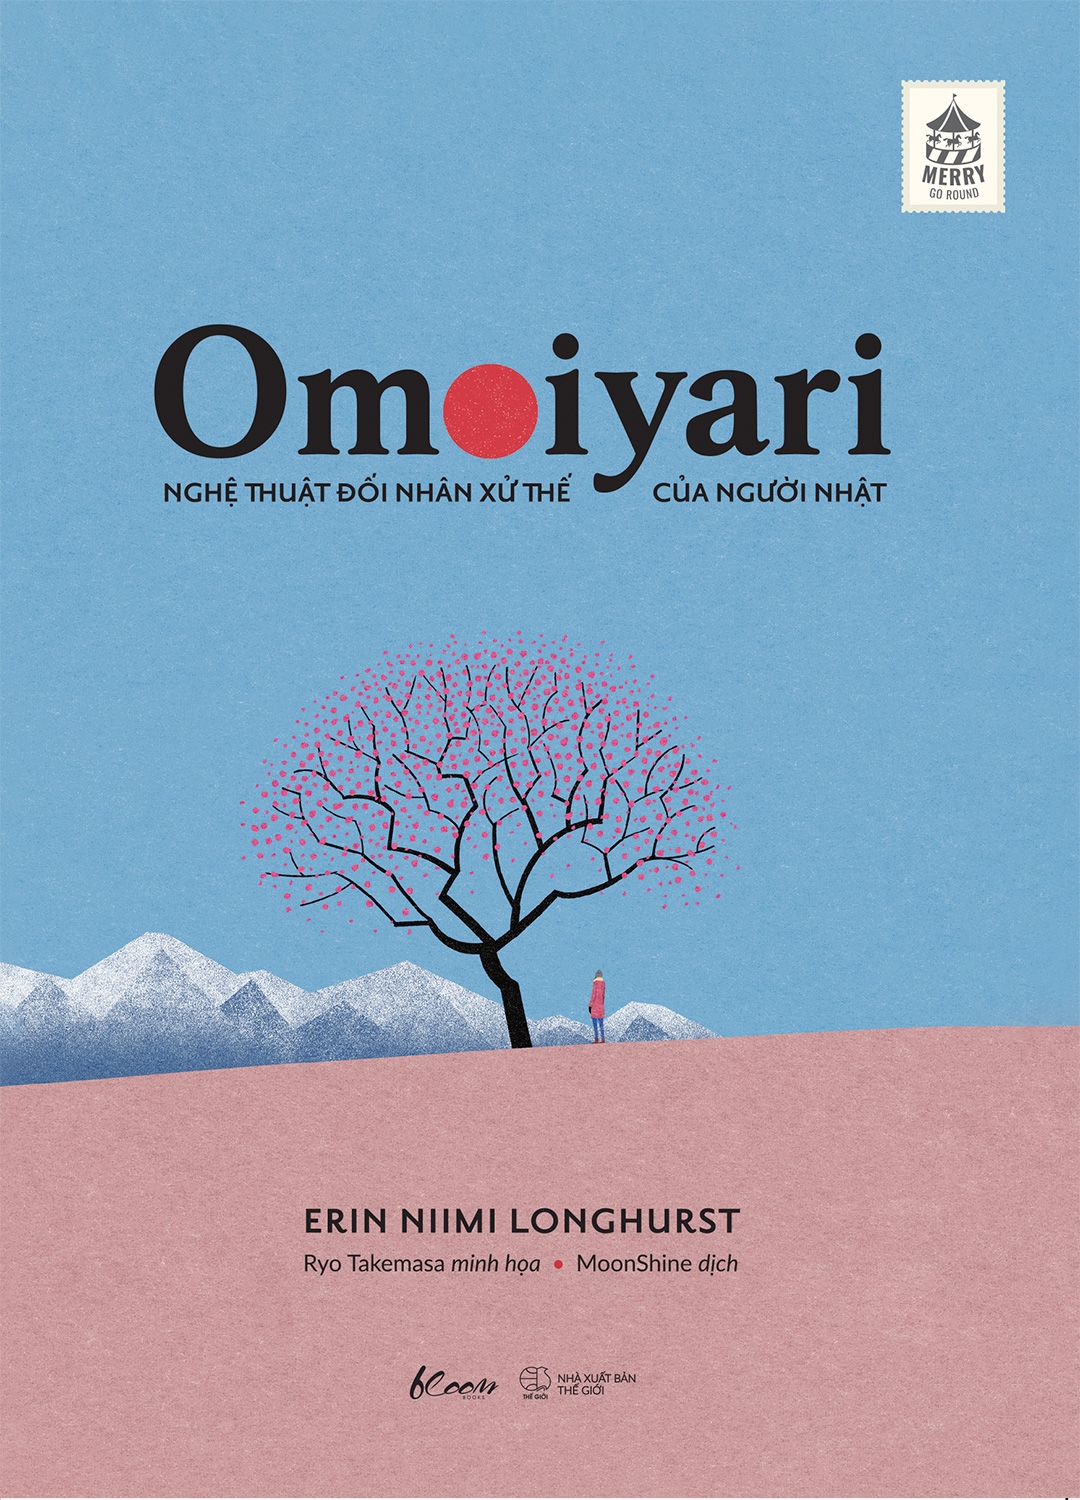 Omoiyari - Nghệ Thuật Đối Nhân Xử Thế Của Người Nhật PDF